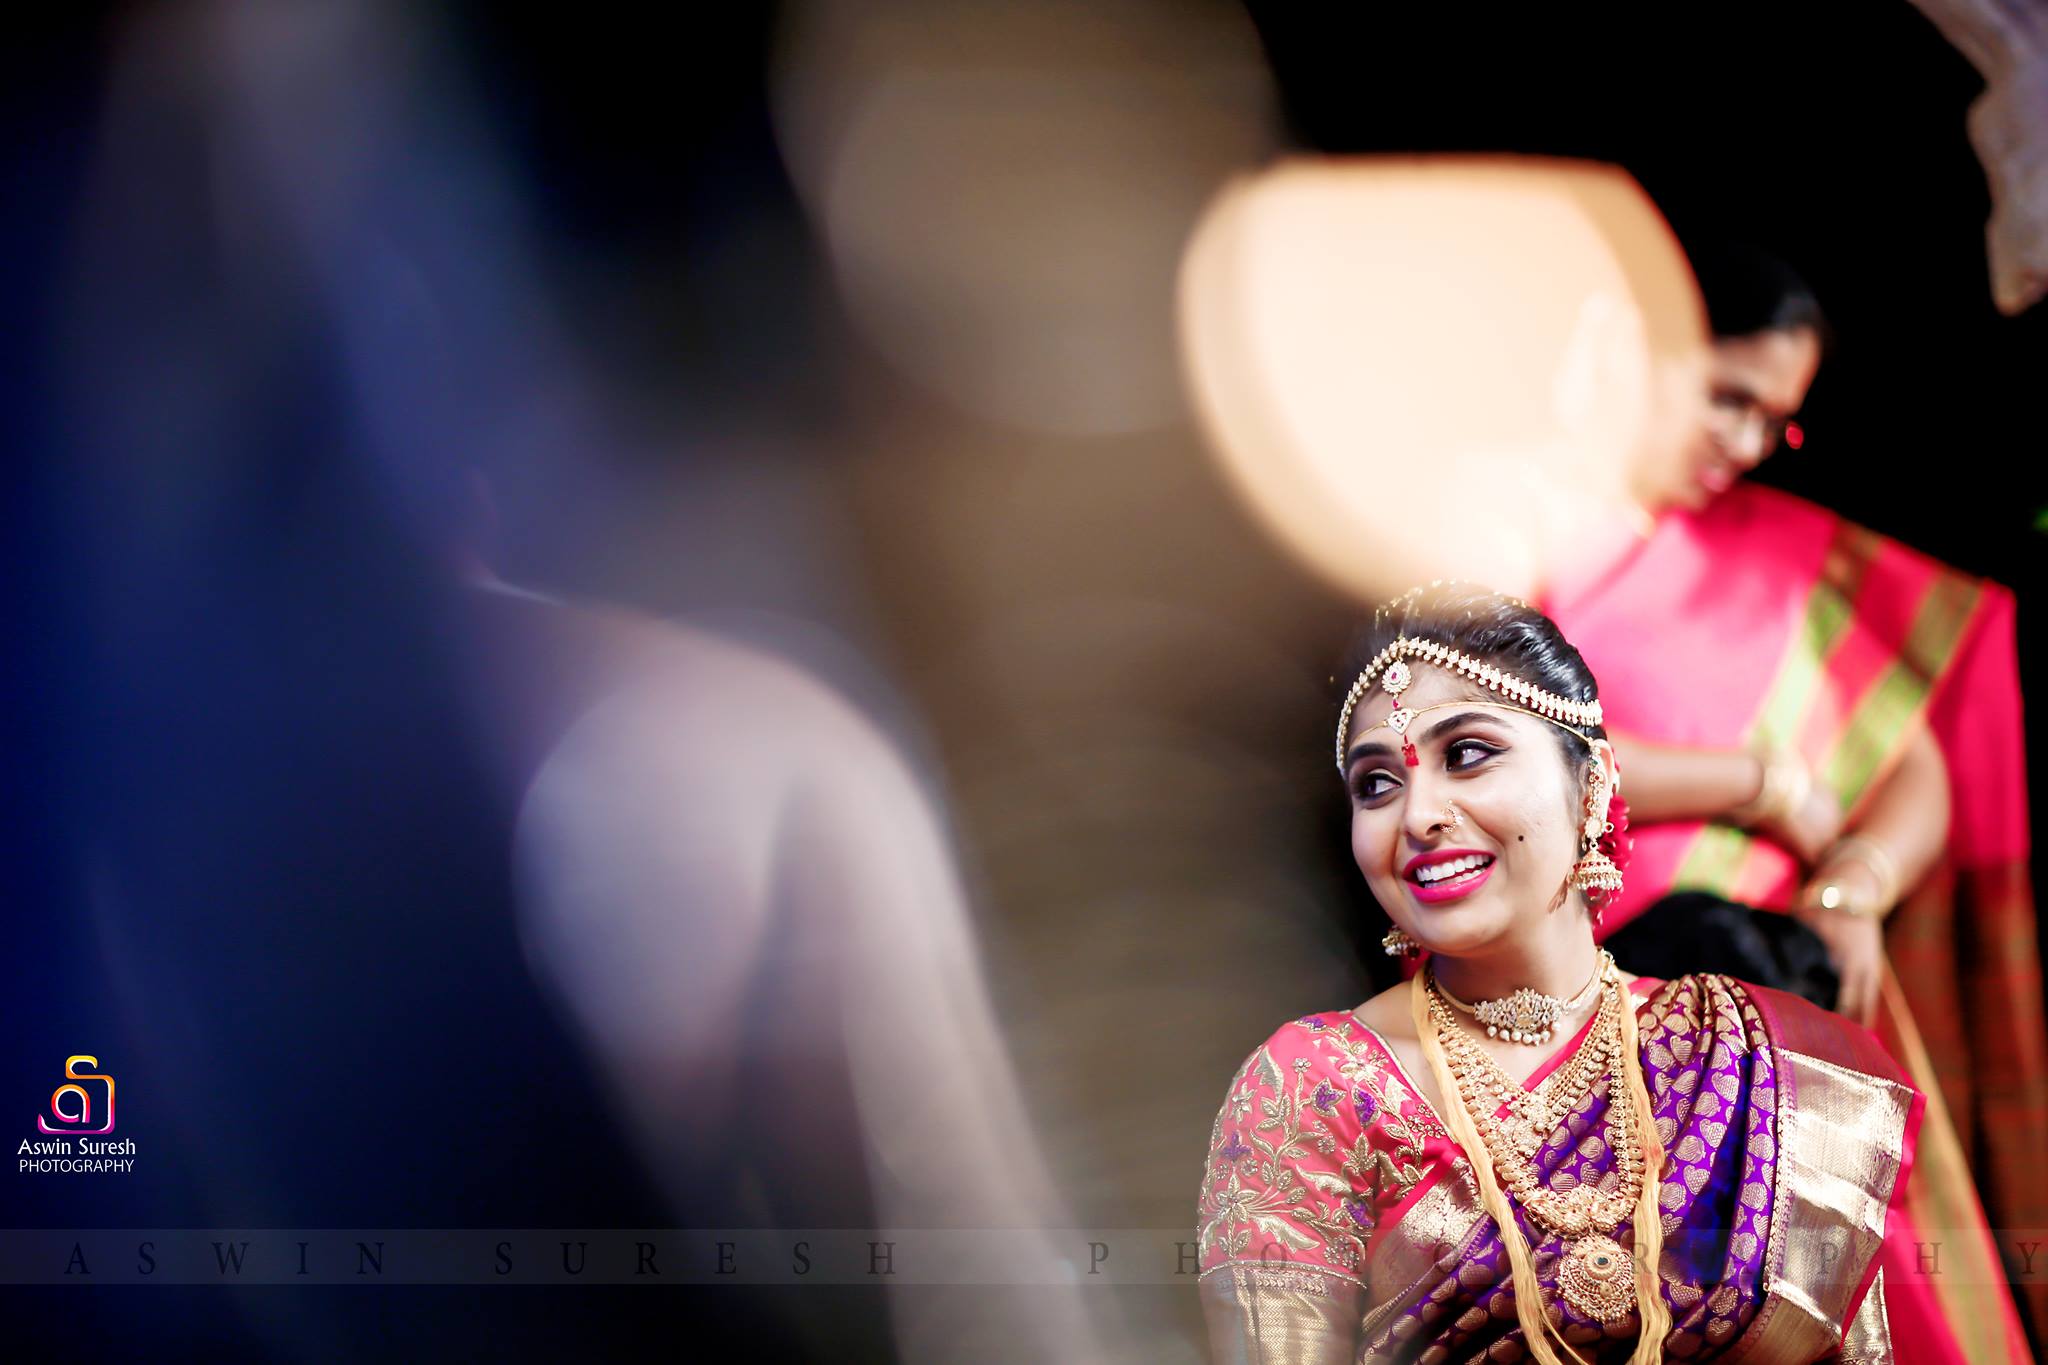  Wedding Images of Ashwin Suresh Photography-img10